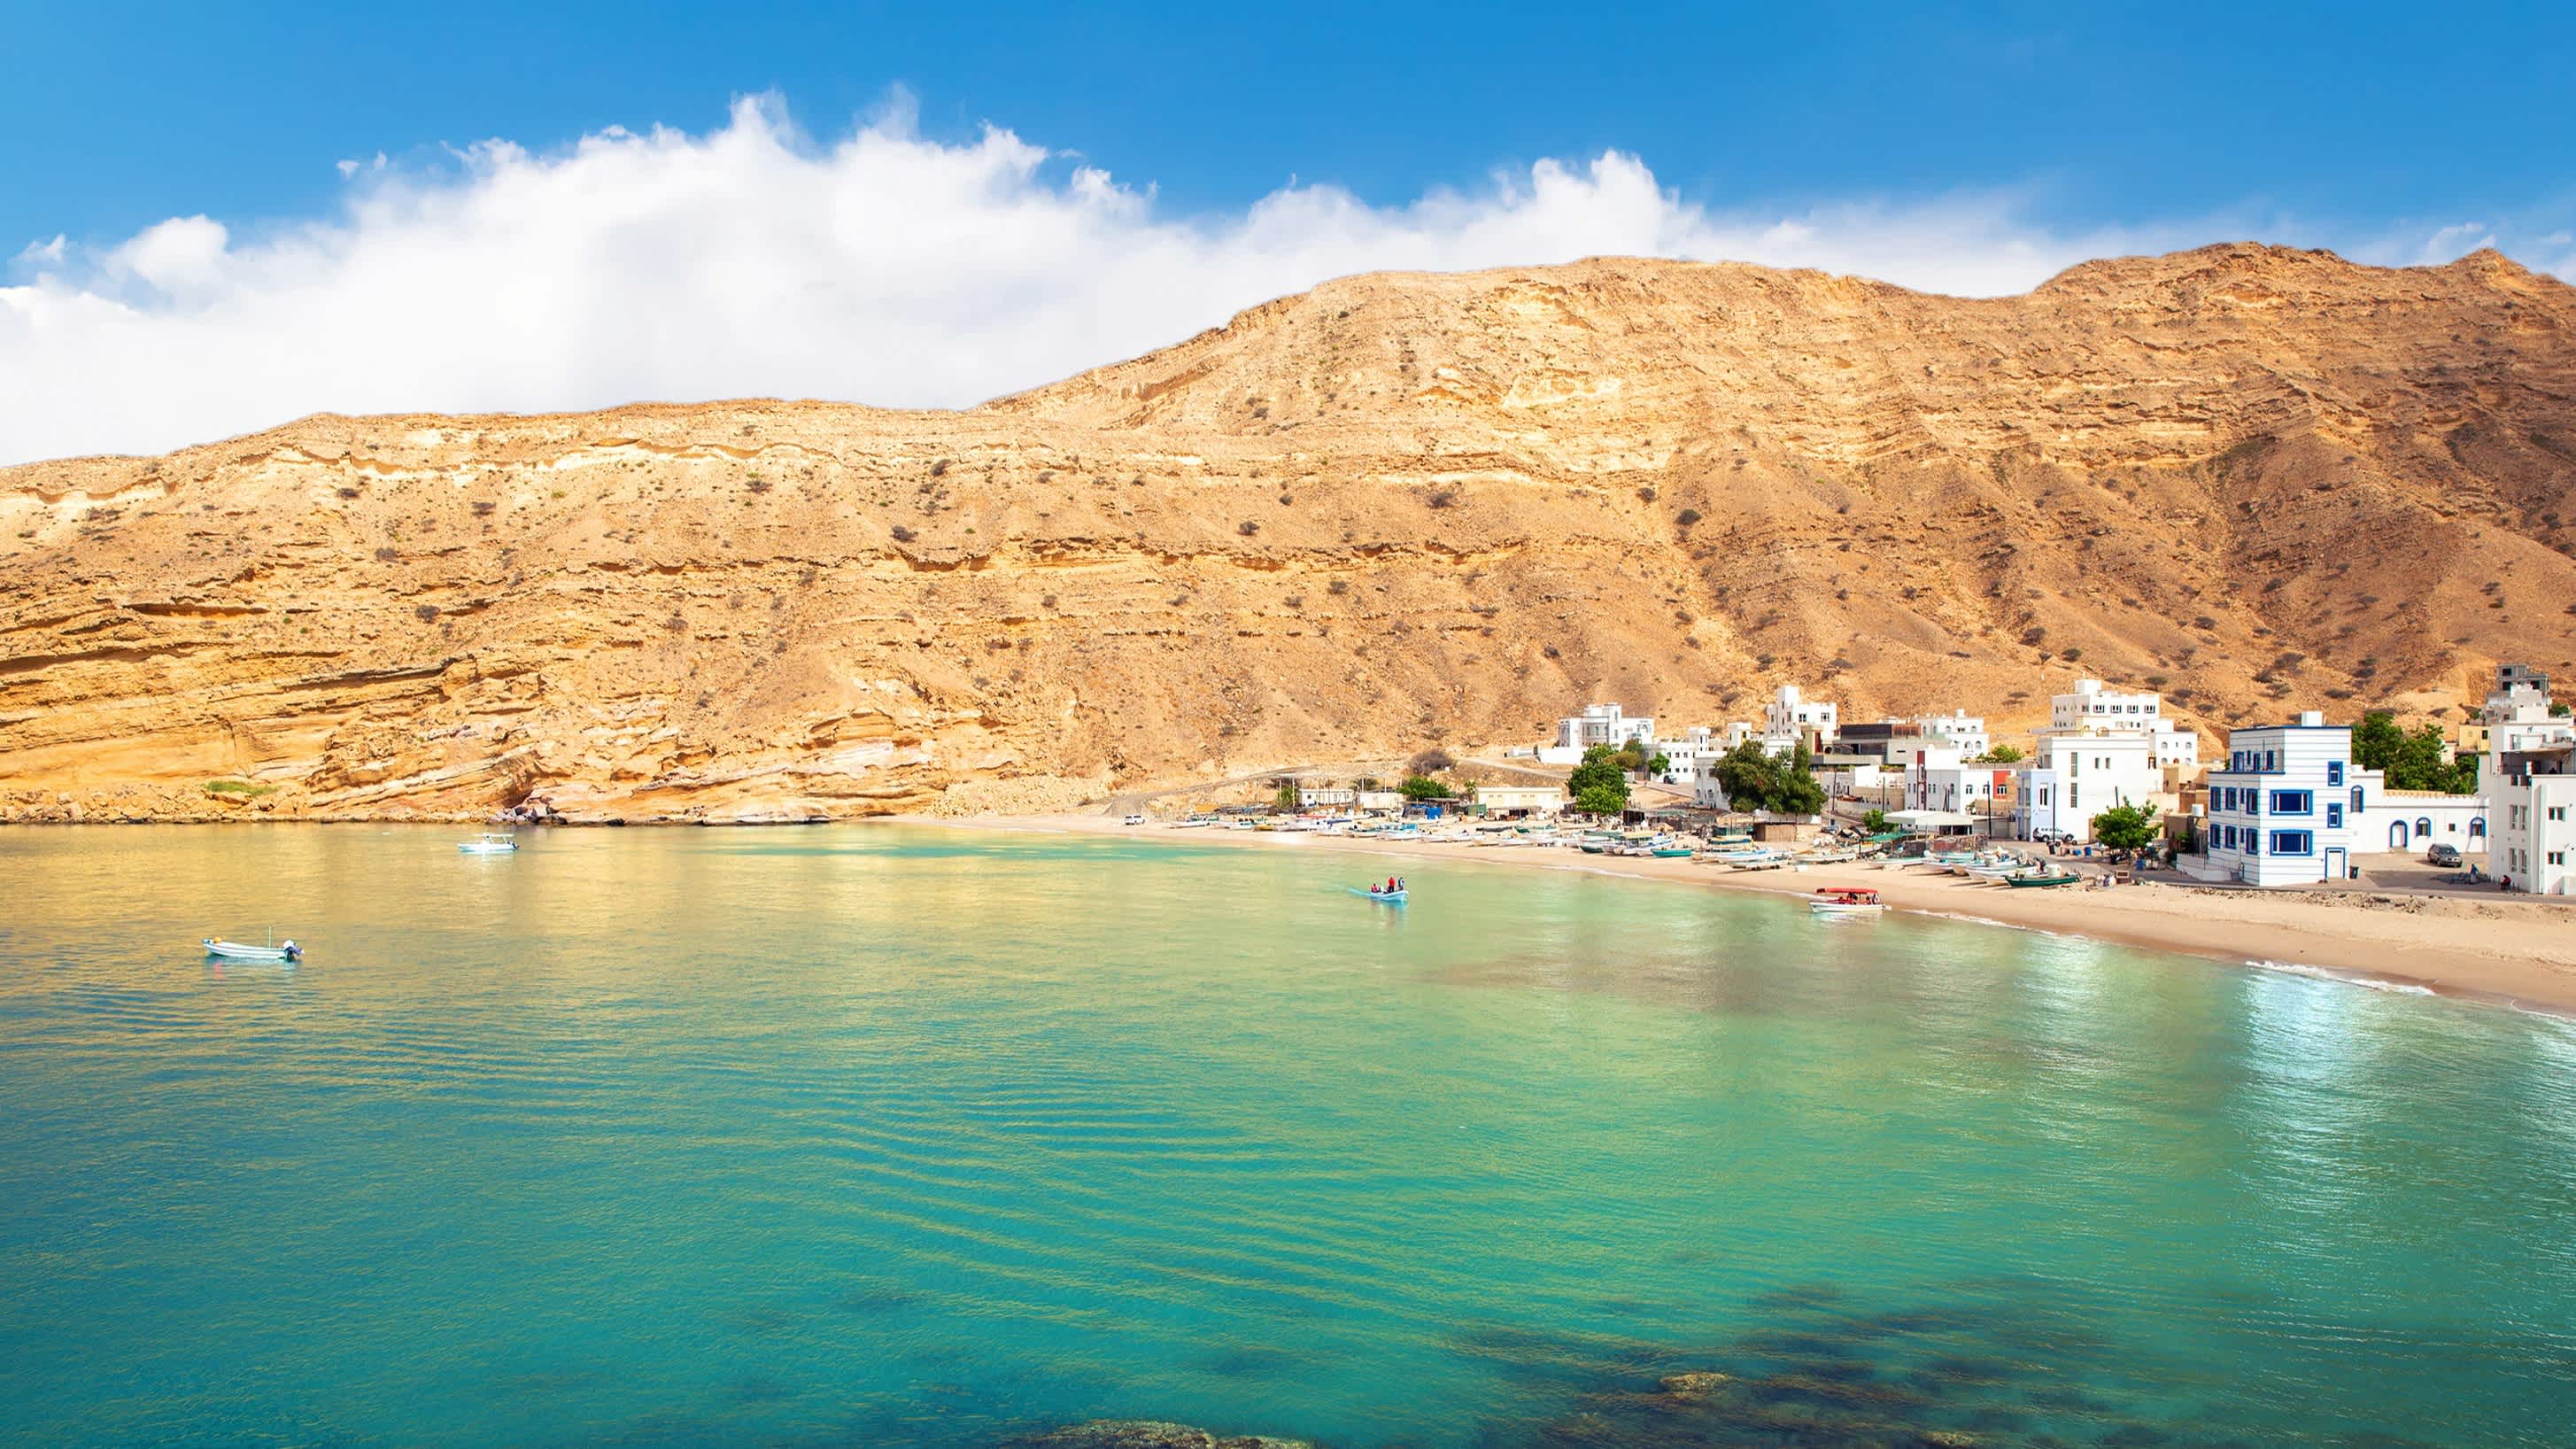 Blick auf das Dorf und dem Strand Quantab an der Küste von Oman.

